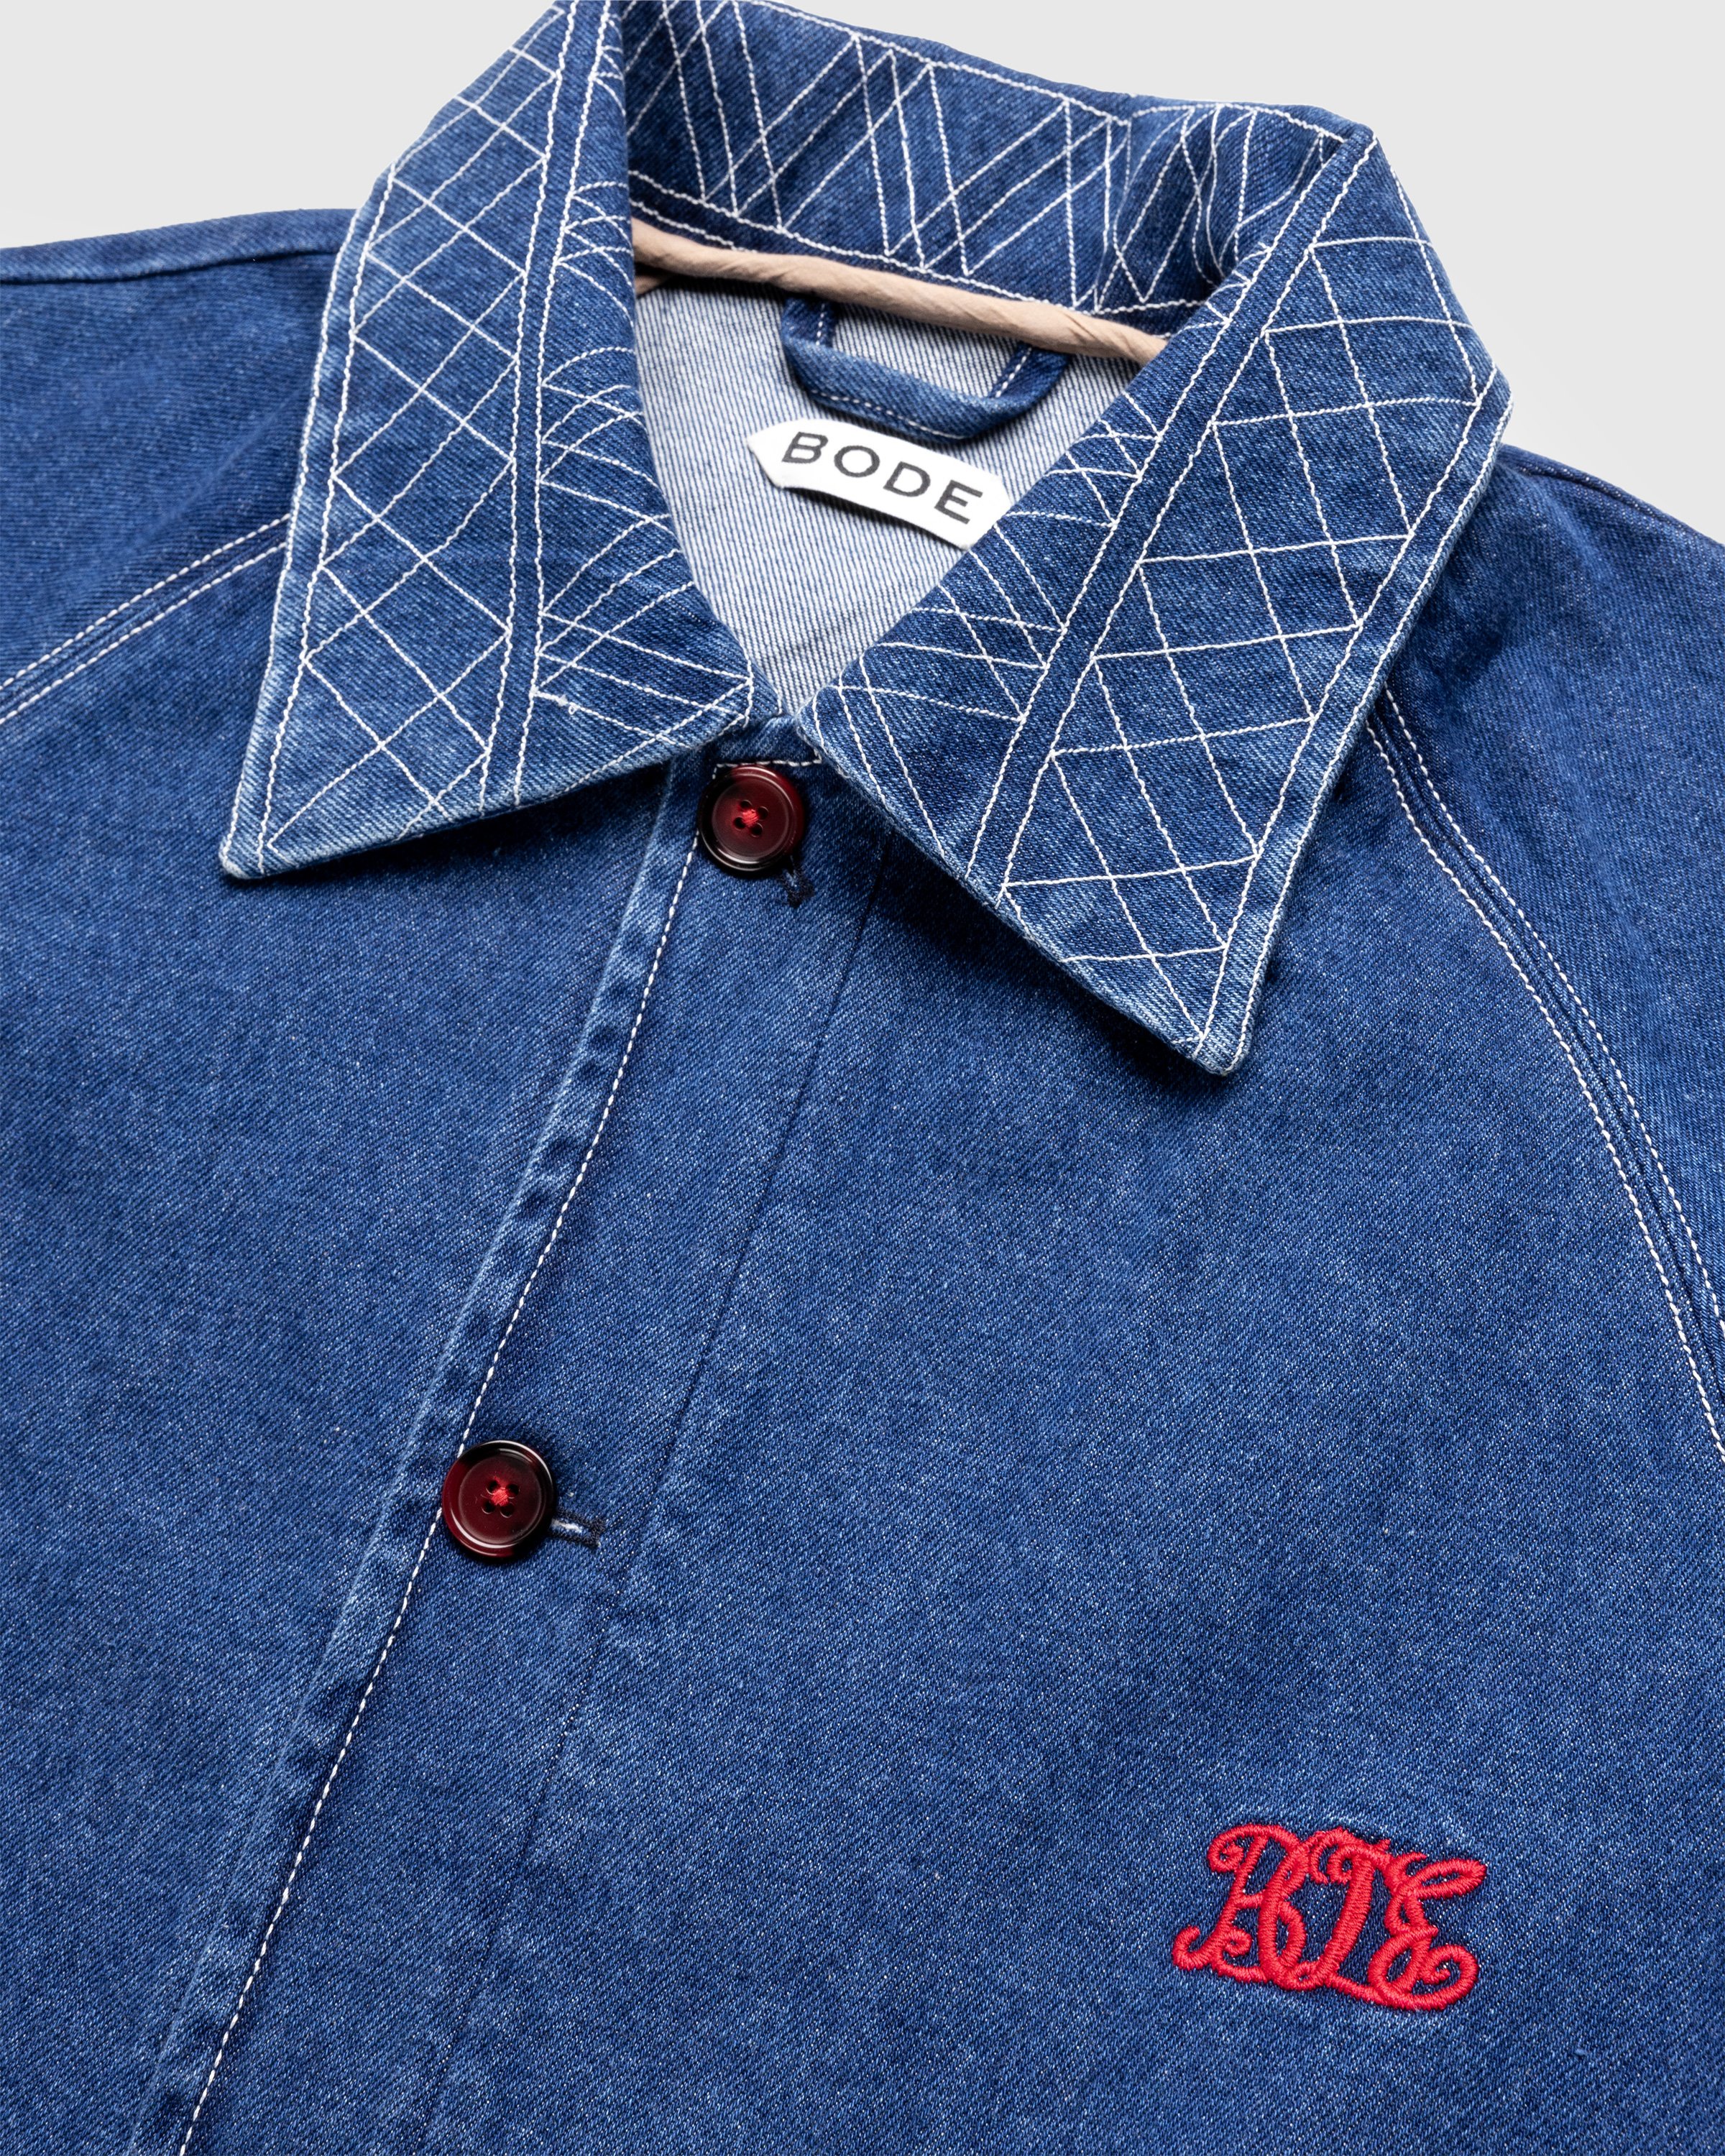 Bode - Embroidered Denim Jacket Indigo - Clothing - Blue - Image 6